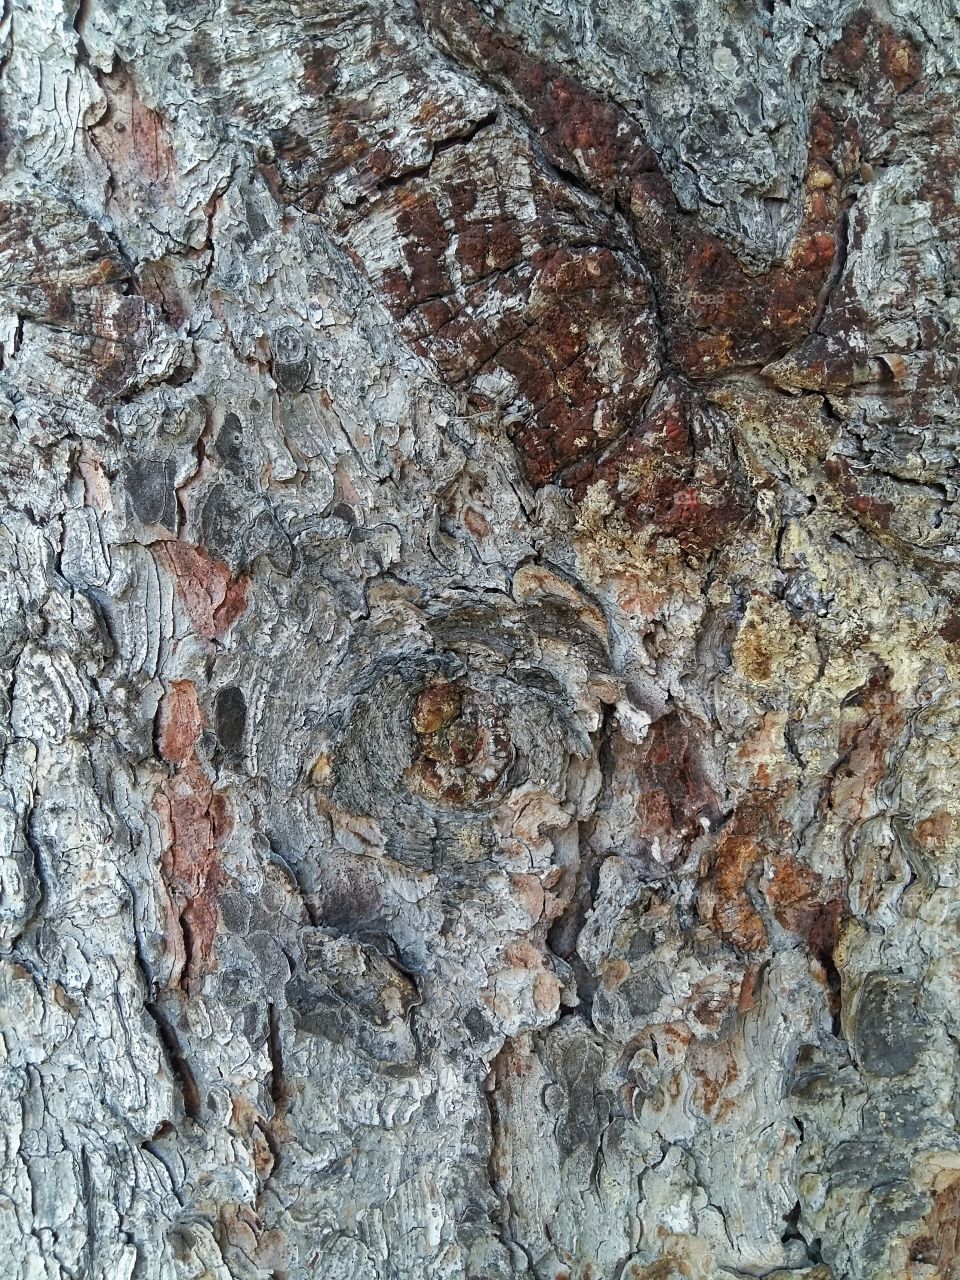 Bark of tree